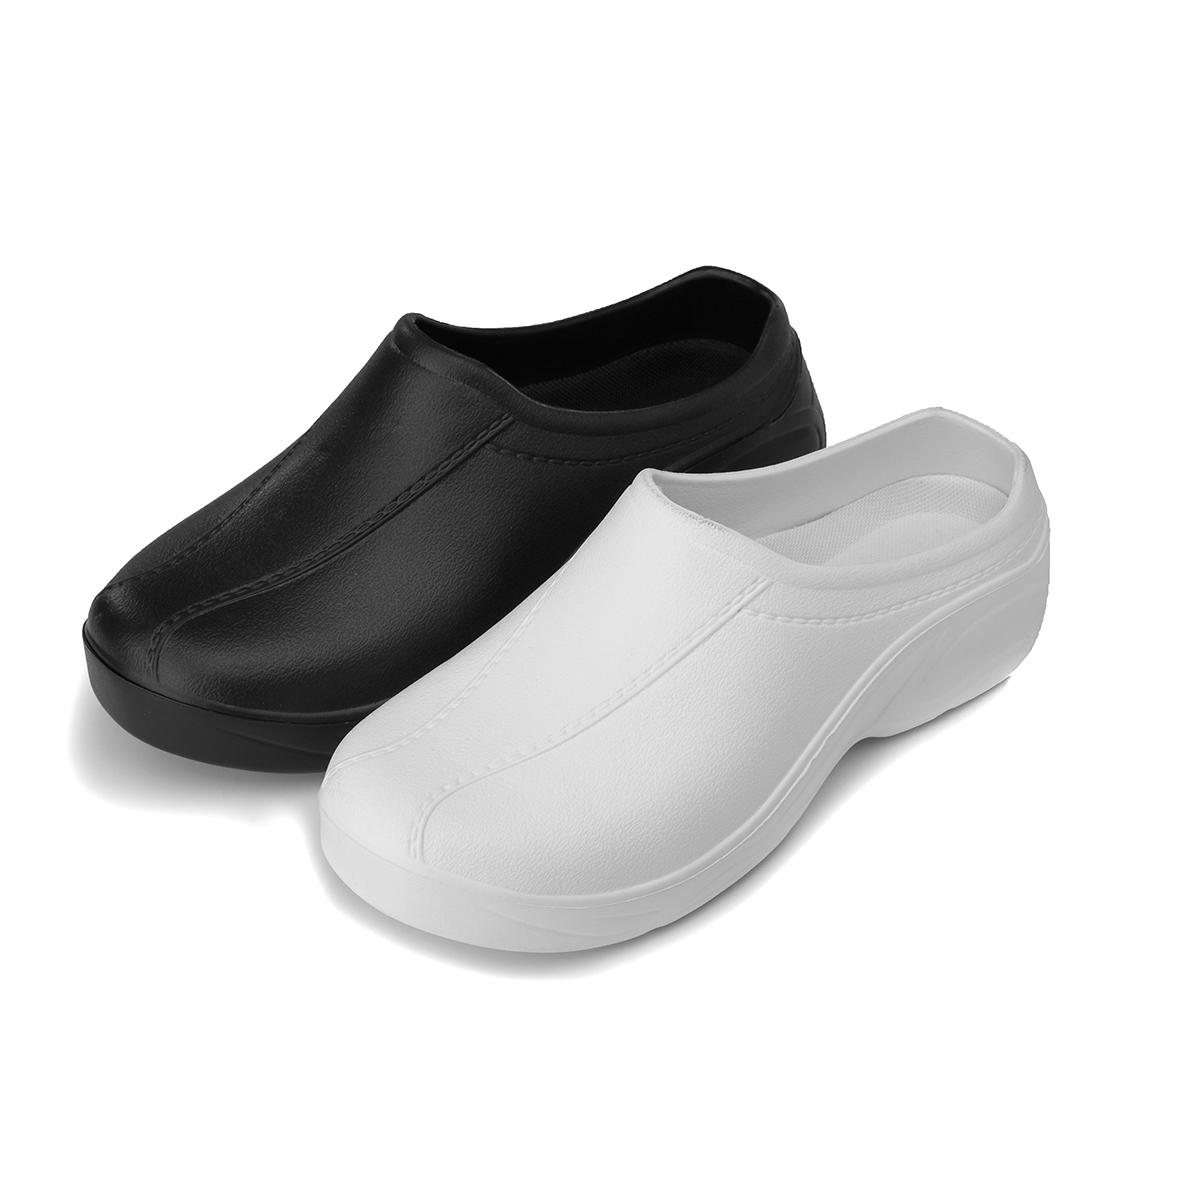 Women's Non-Slip Shoes Flat EVA Resistant Penetrating Gas Doctor Nurse Beach Shoes